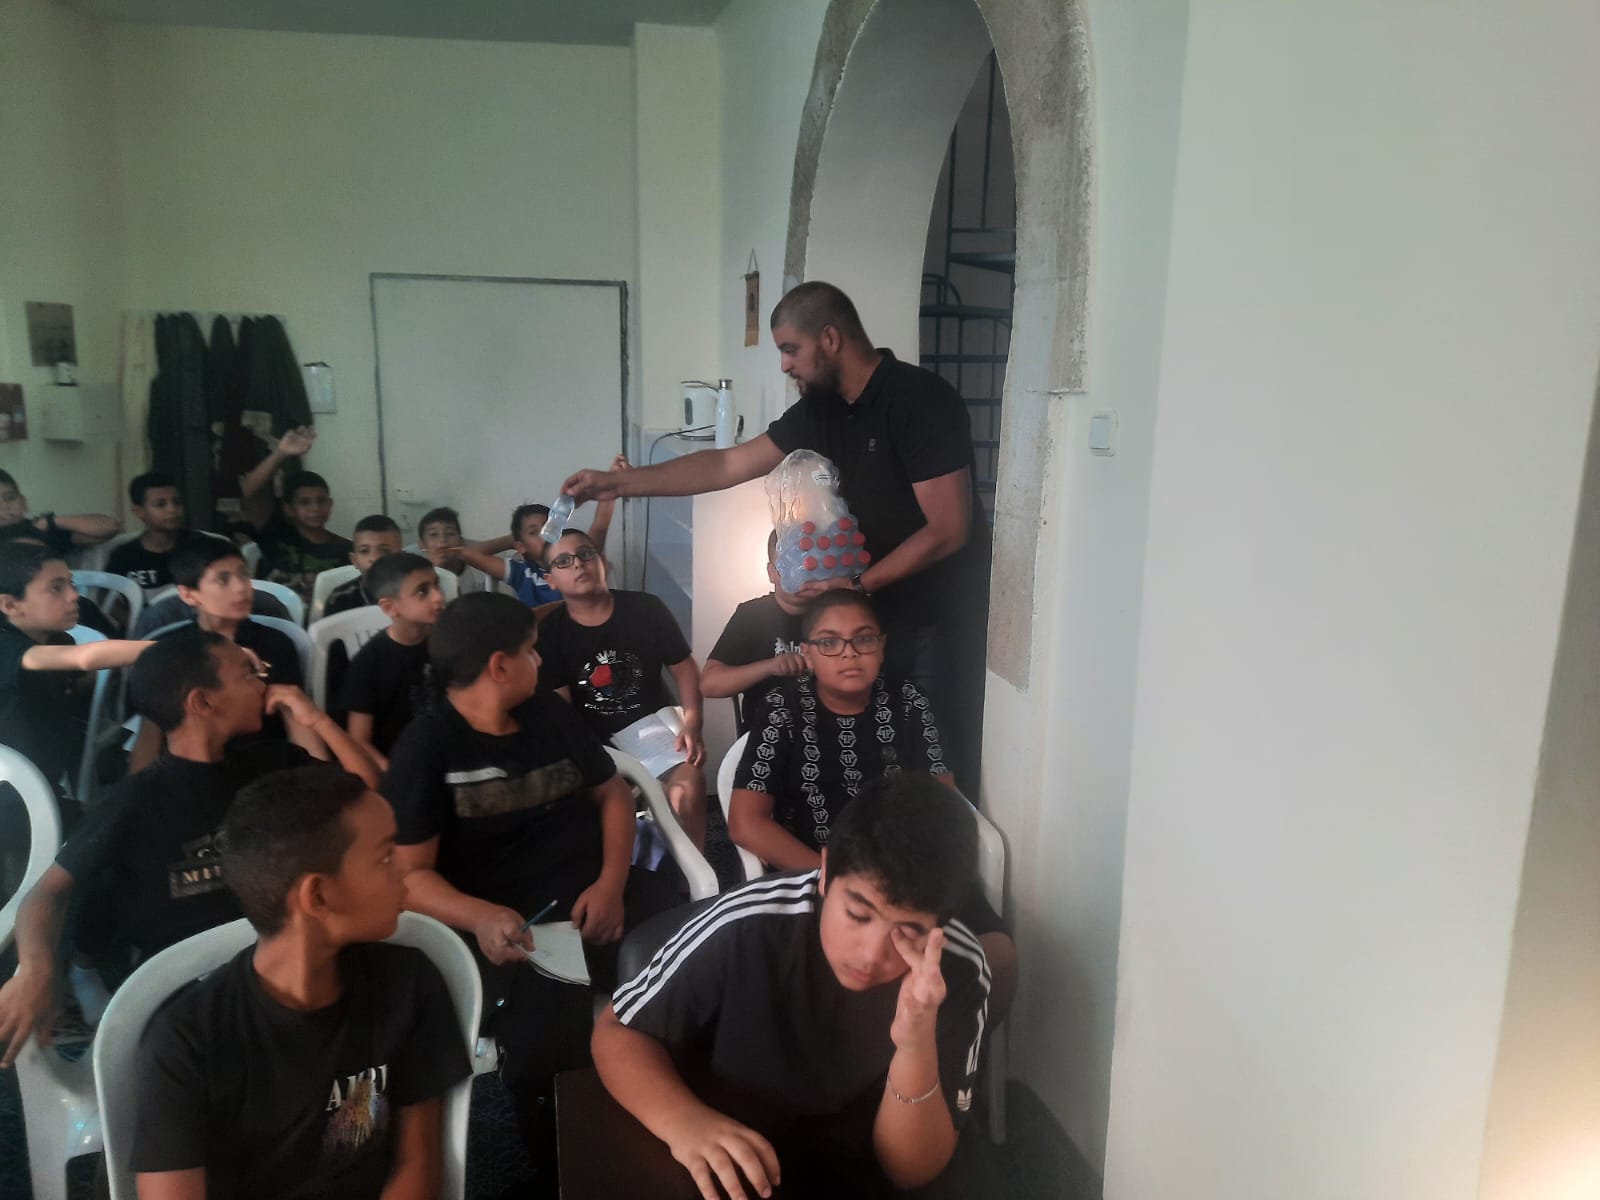 يافا: بالصور إنطلاق دورة التقوية باللغة الإنجليزية في مسجد النزهة